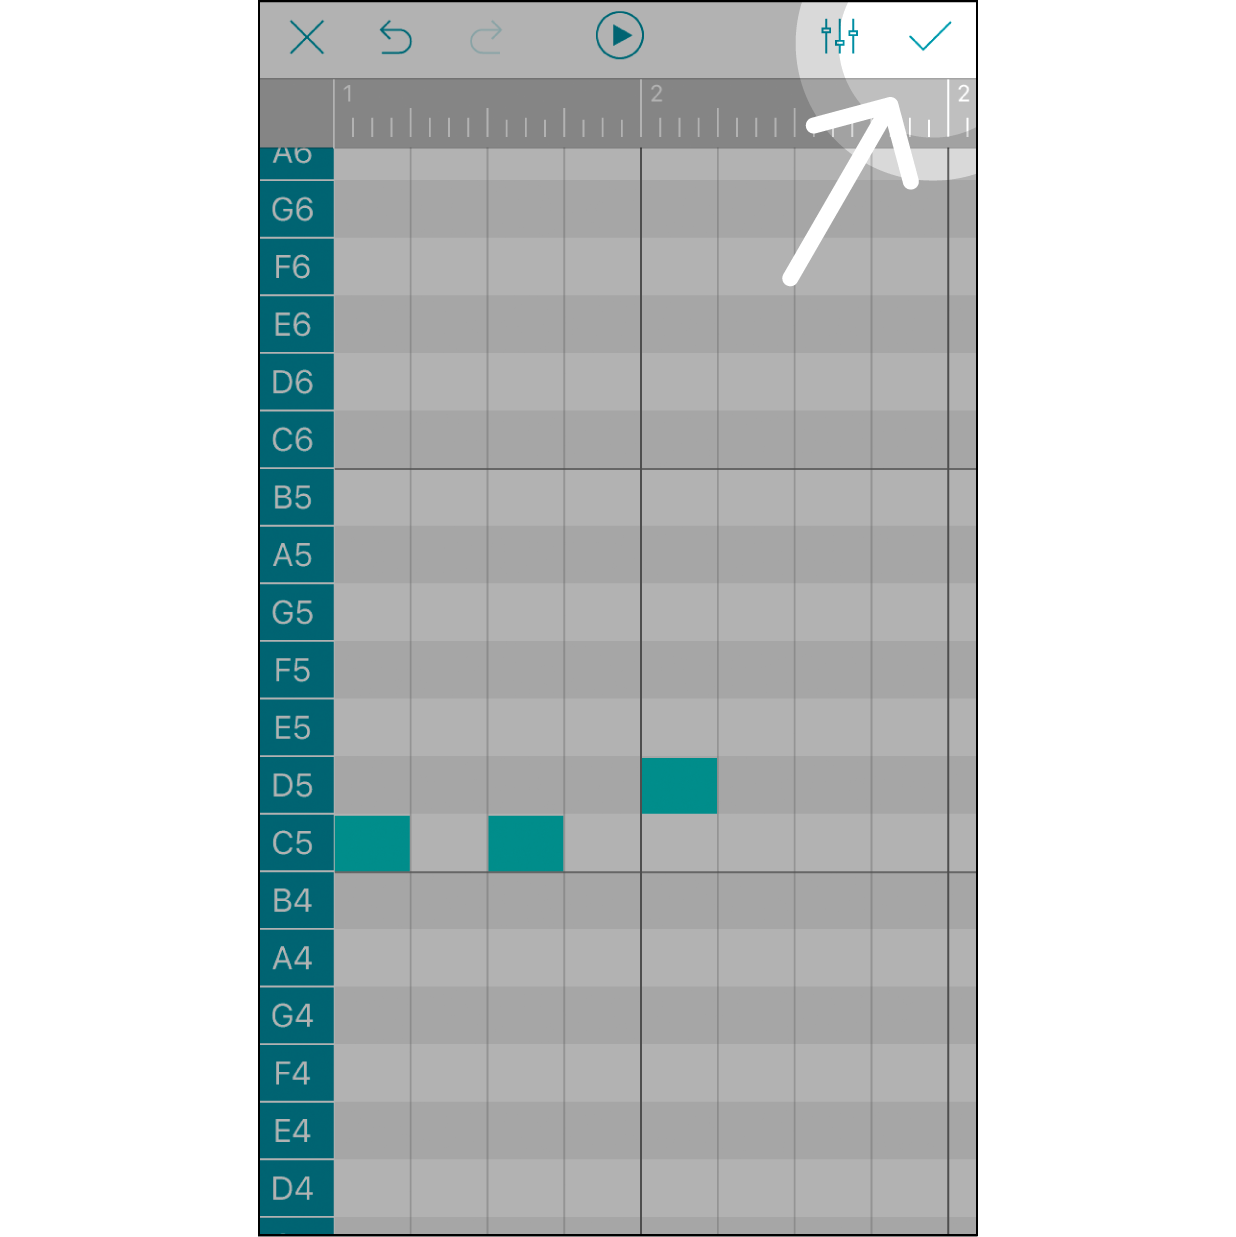 完成編曲並儲存完成編曲後，可以點擊右上角「打勾」圖示將歌曲儲存並離開。